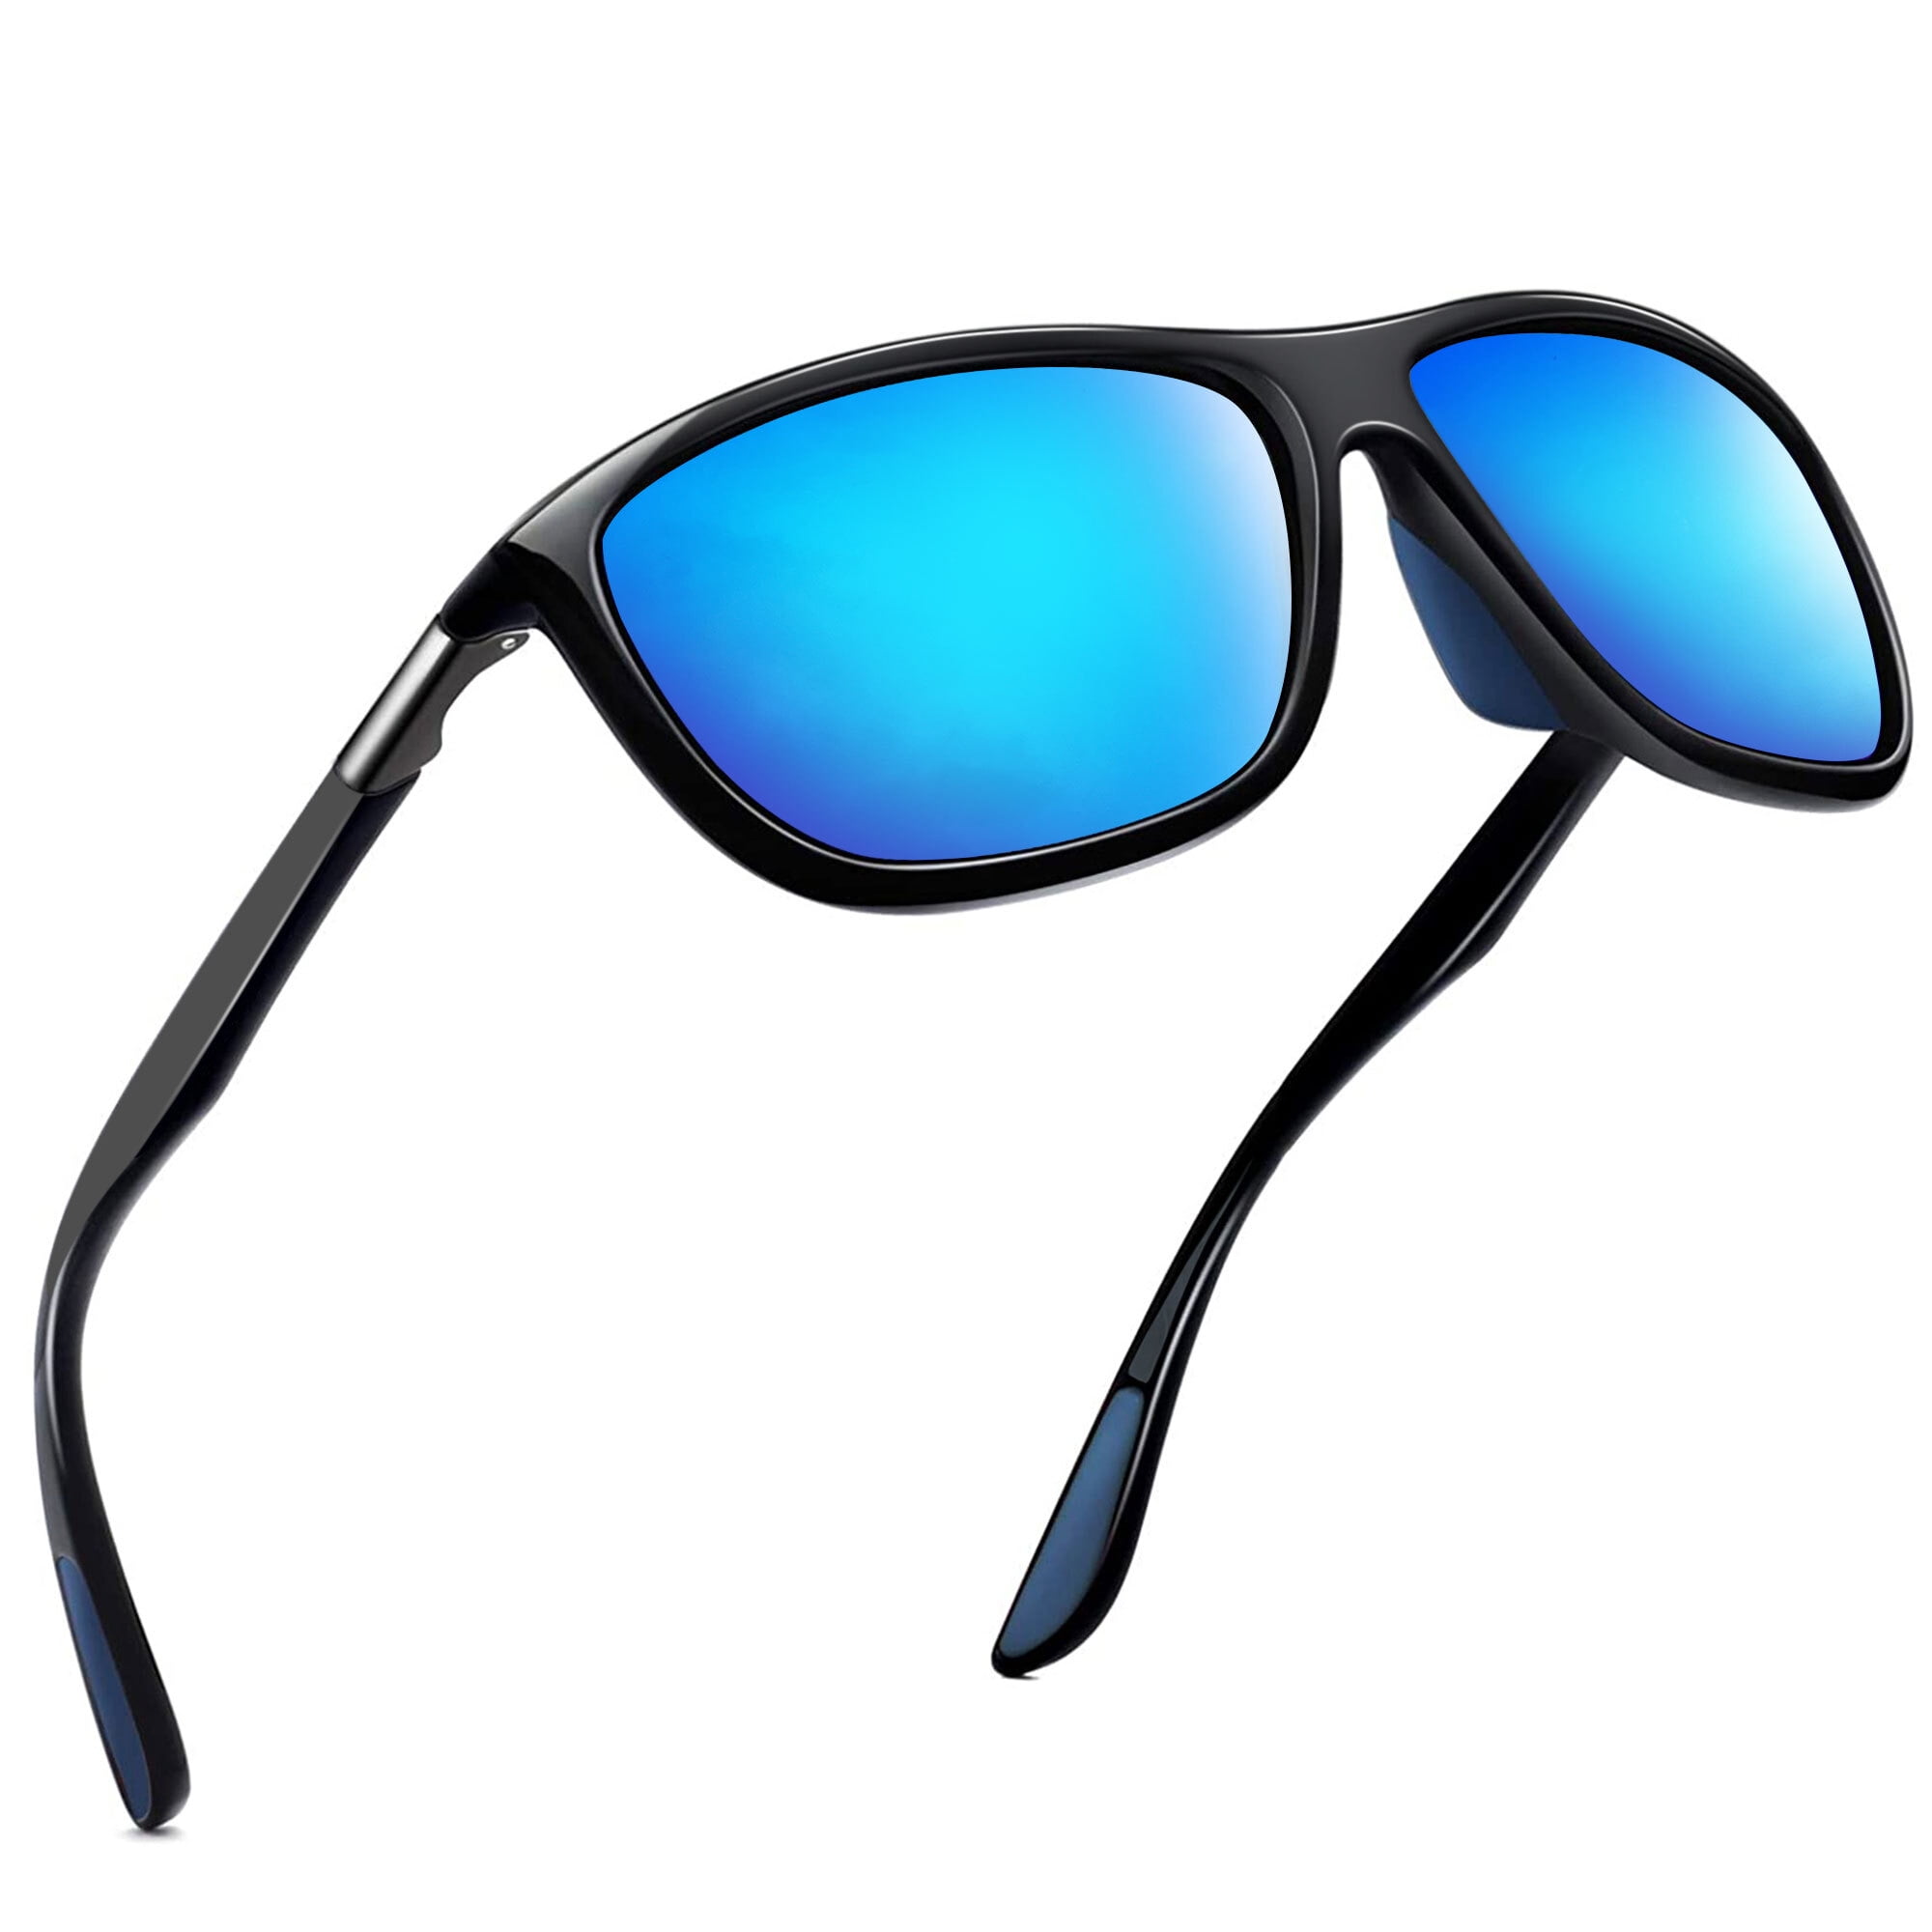 Joopin Sports Sunglasses for Men & Women, Polarized glass lens